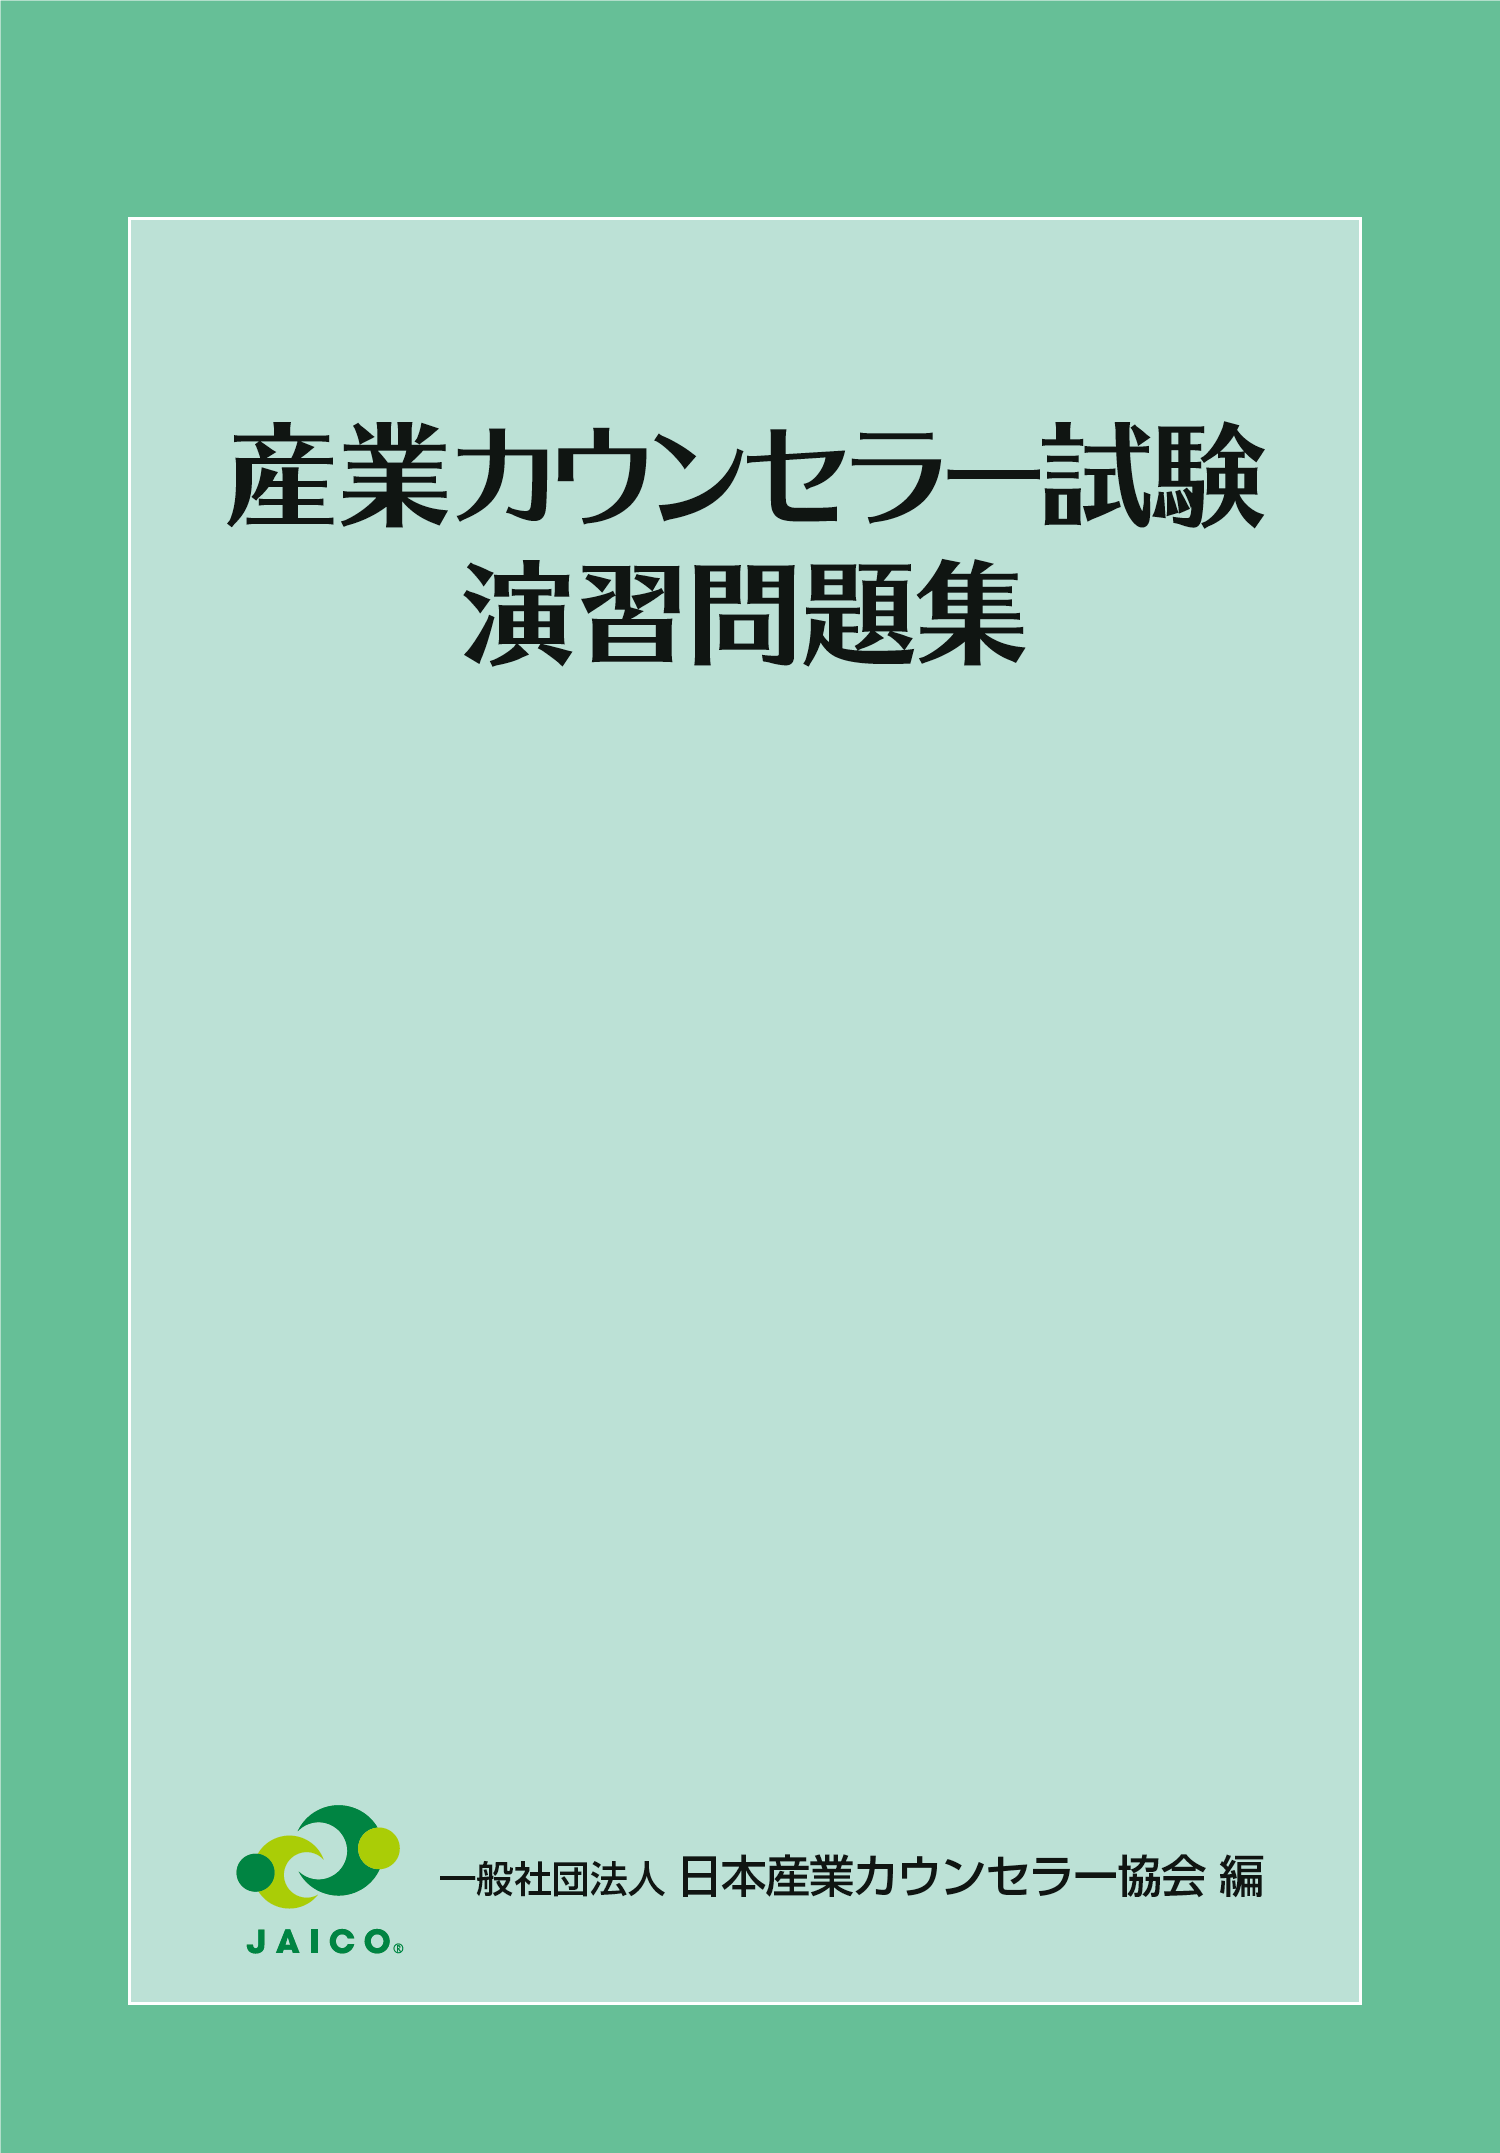 産業カウンセラー試験 演習問題集 書籍刊行案内 一般社団法人 日本産業カウンセラー協会